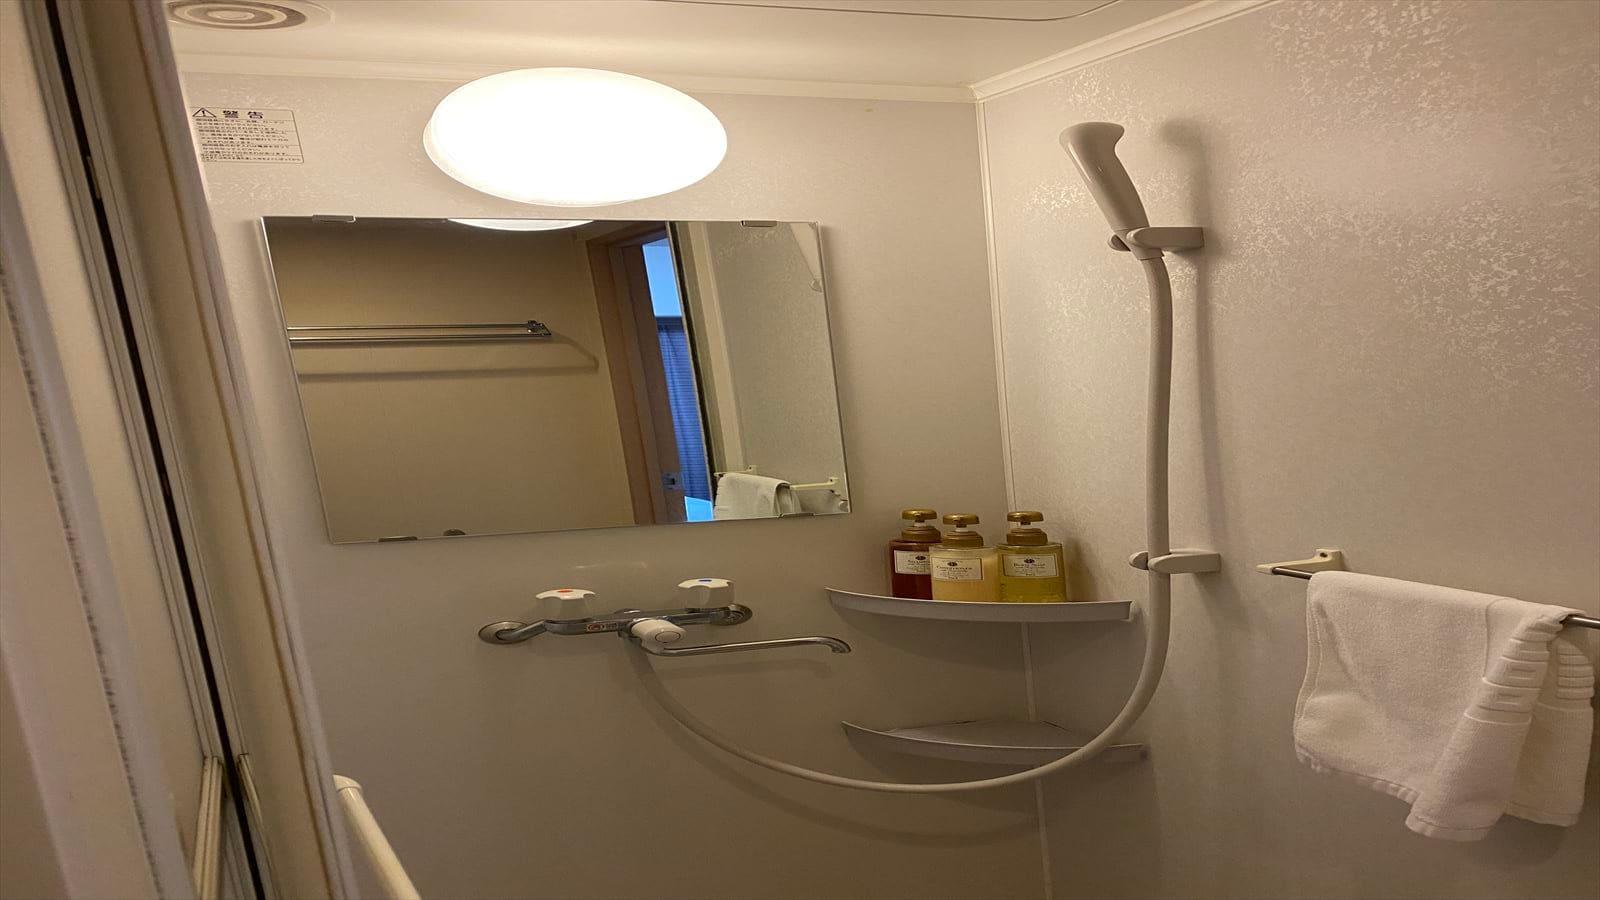 ◆ ตู้อาบน้ำฝักบัว (ไม่รวมห้องเดี่ยวราคาประหยัด)